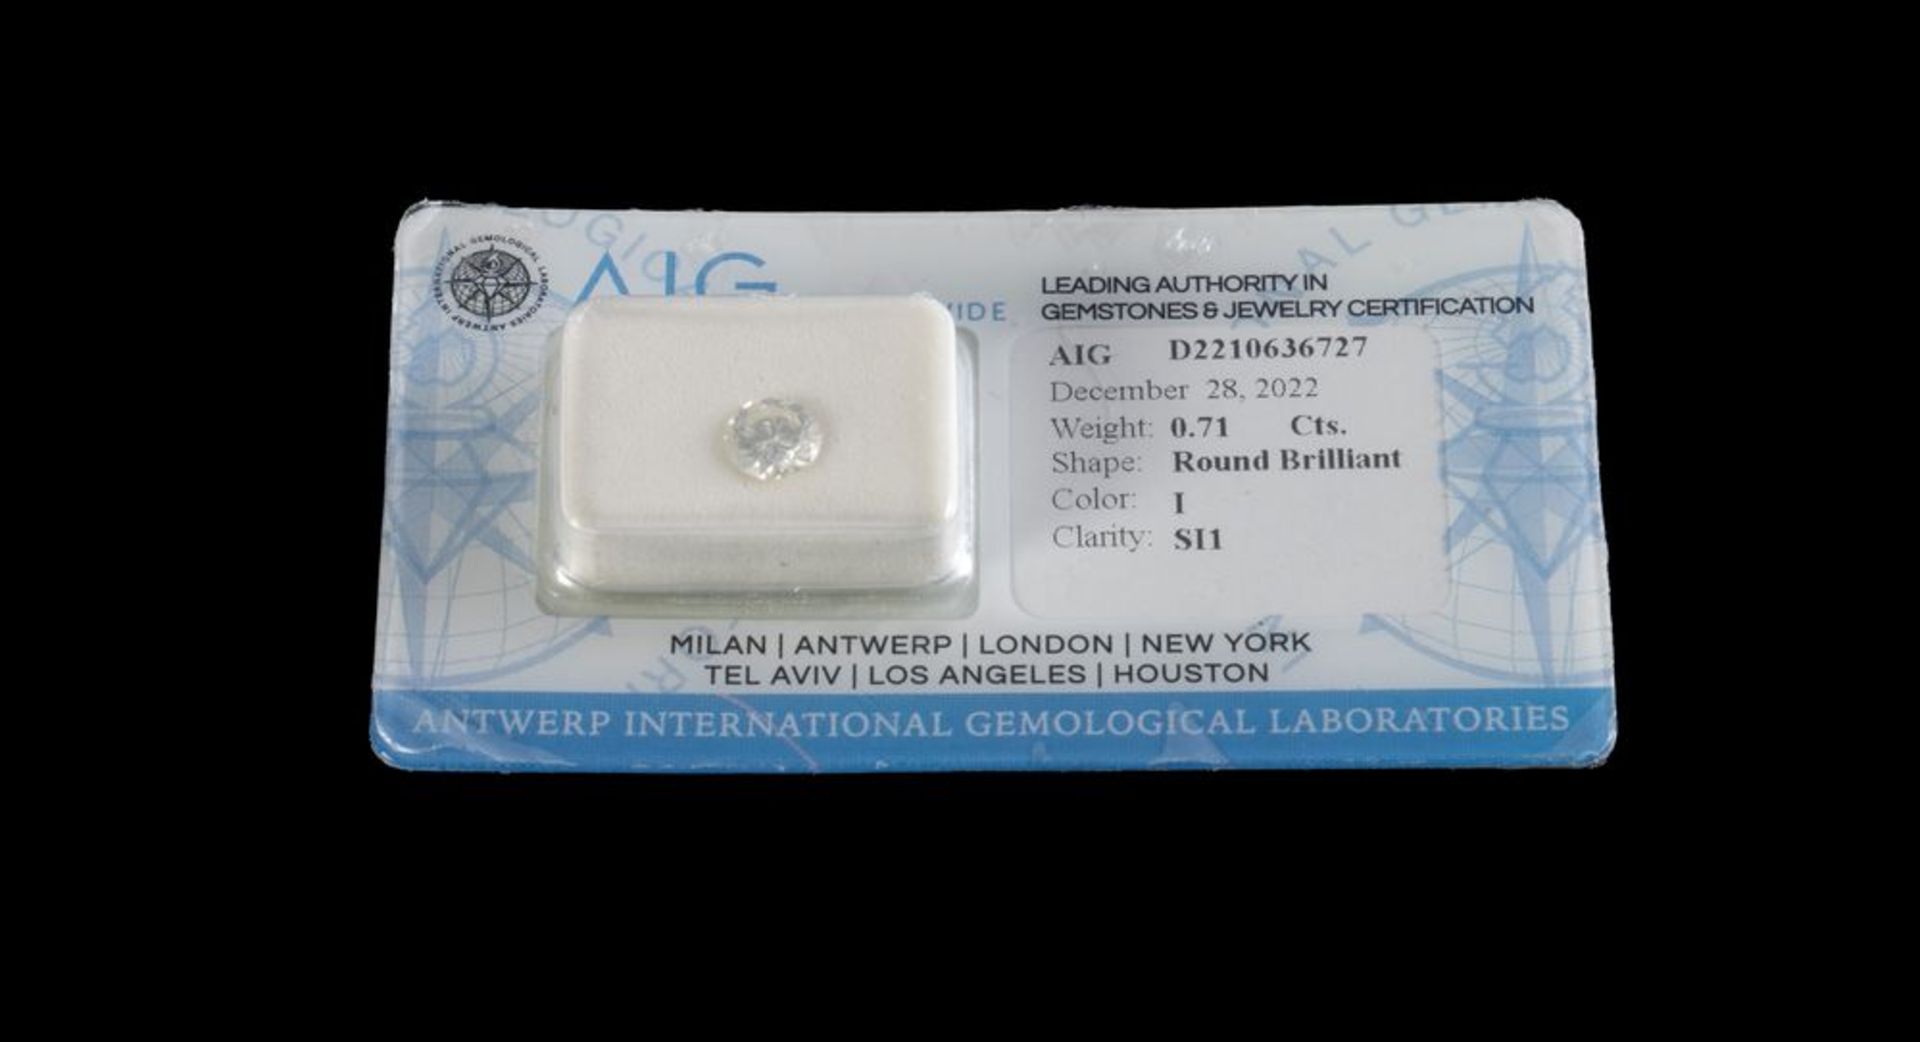 DIAMANTE IN BLISTER Diamante taglio brillante rotondo certificato AIG di ct. 0,71 colore I purezza S - Image 2 of 2